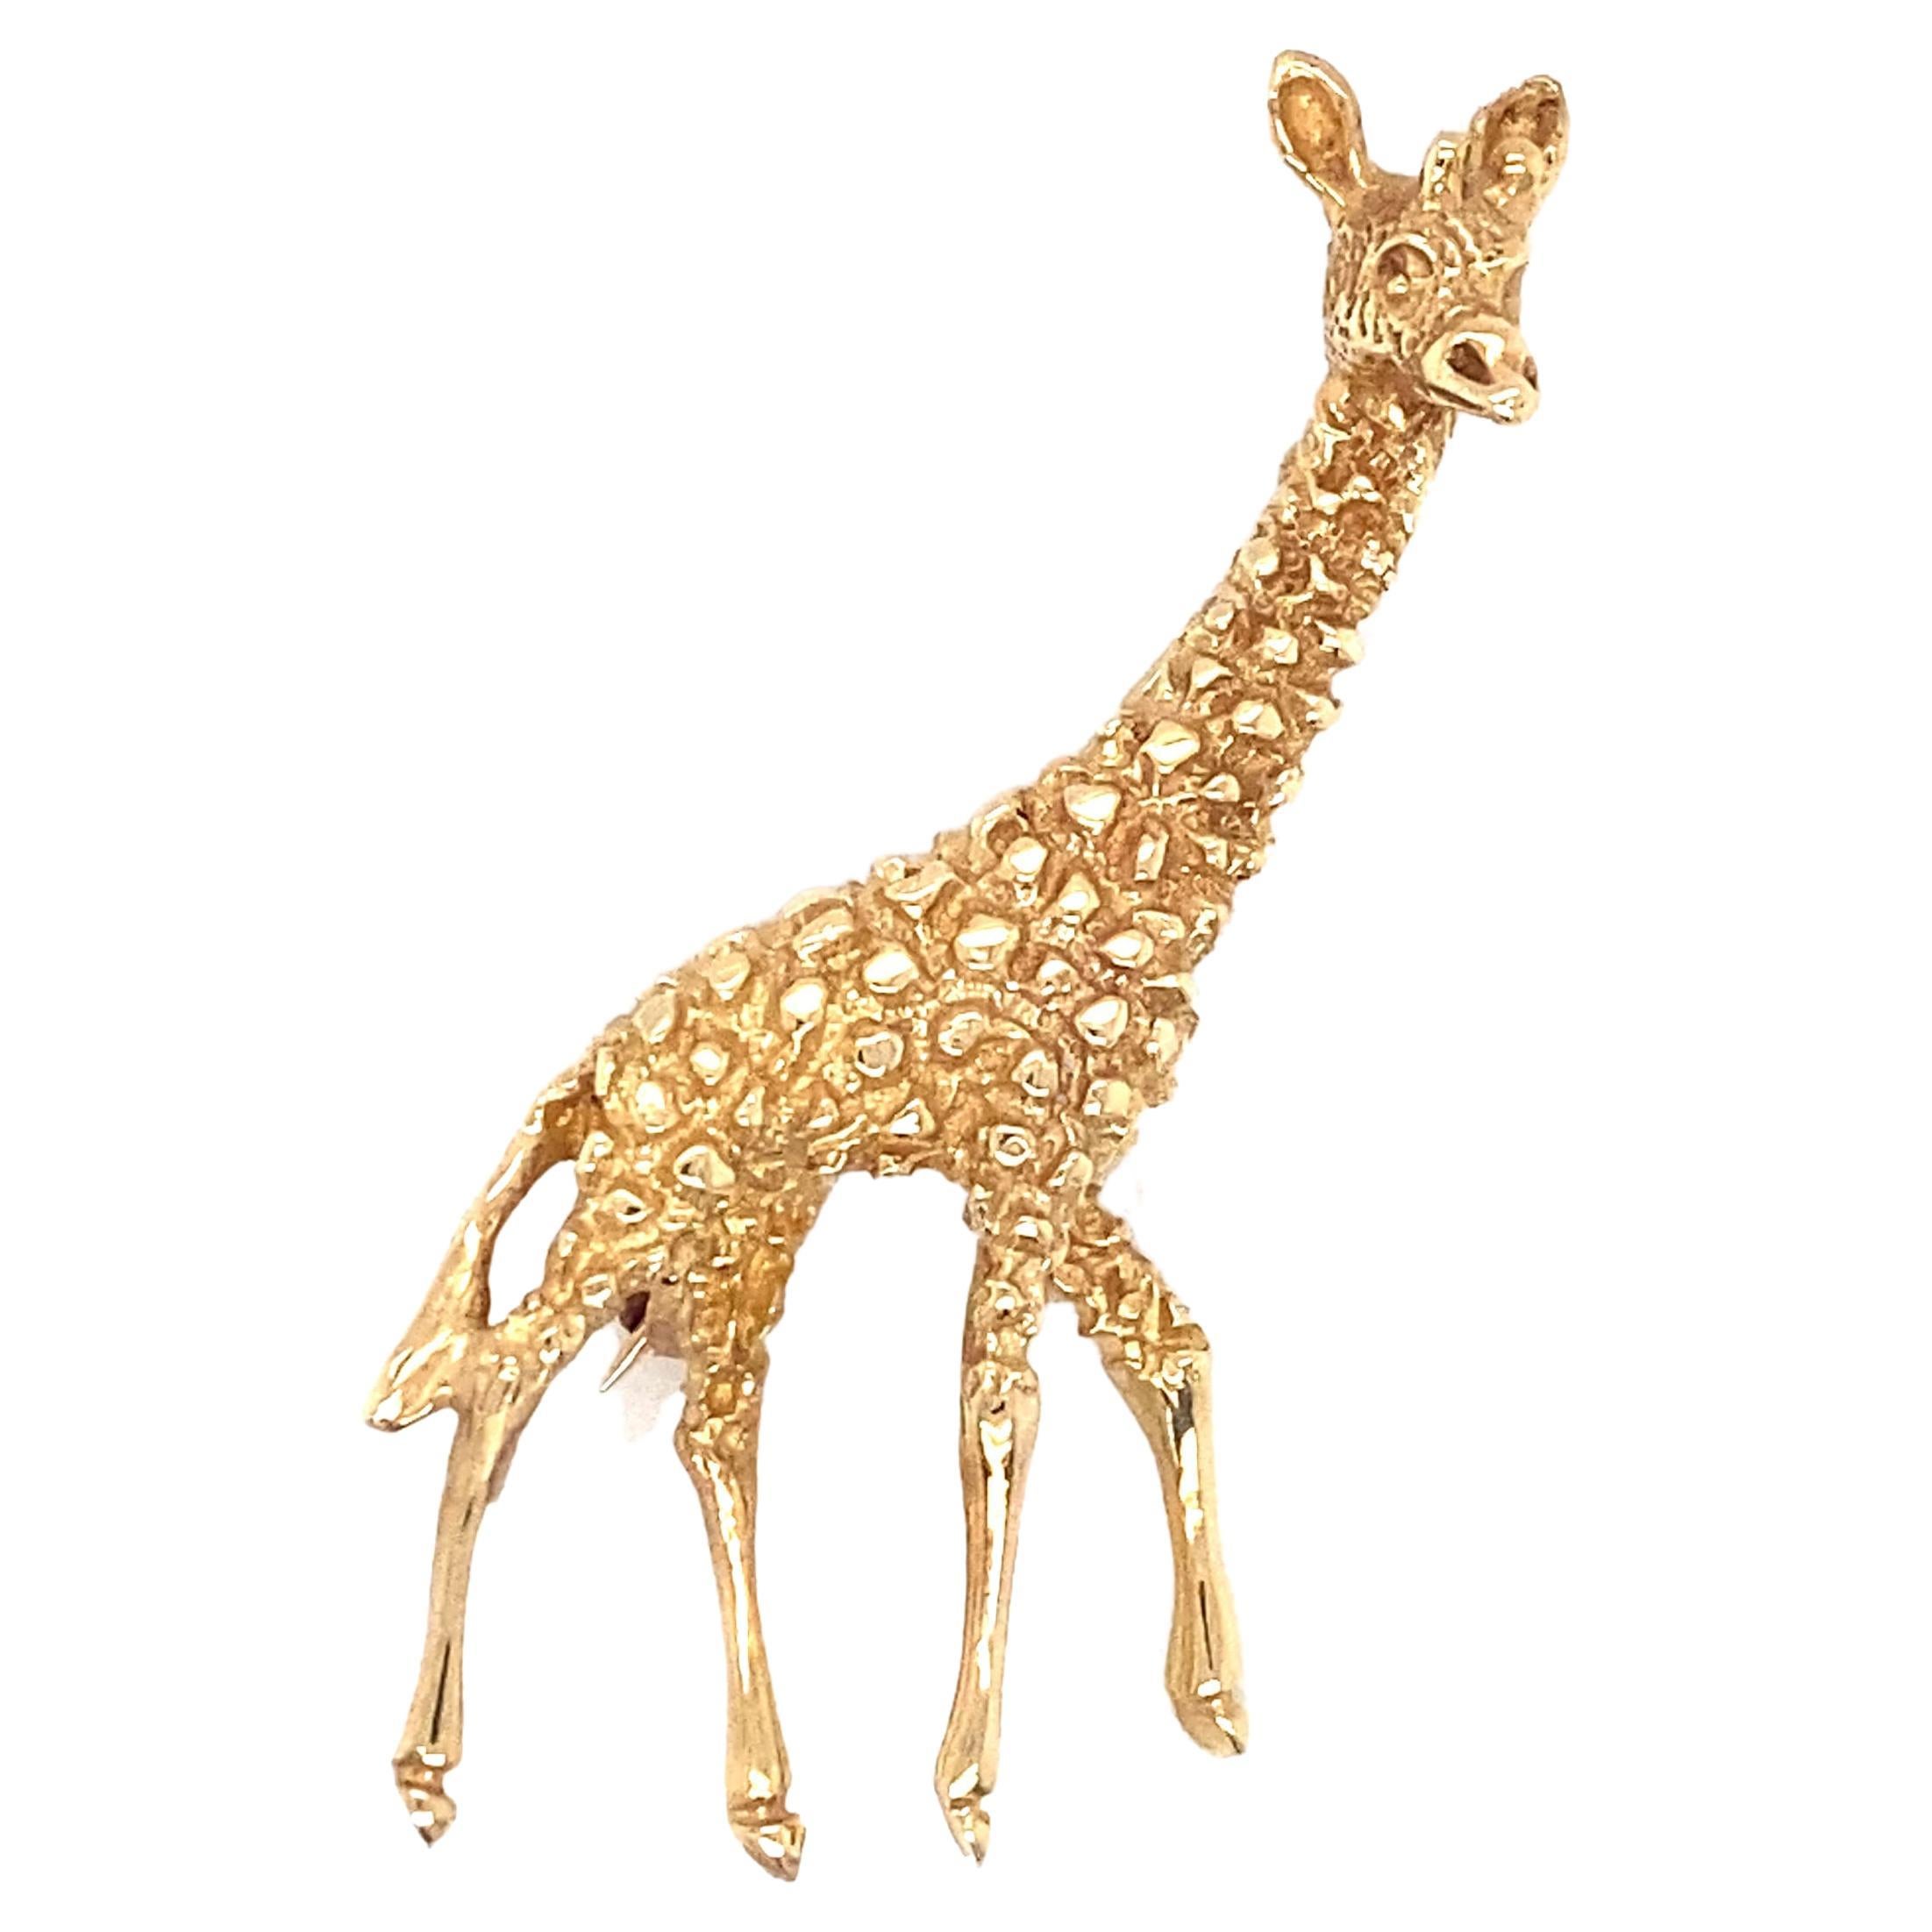 Circa 1950s Retro Giraffe Brooch in 14 Karat Gold